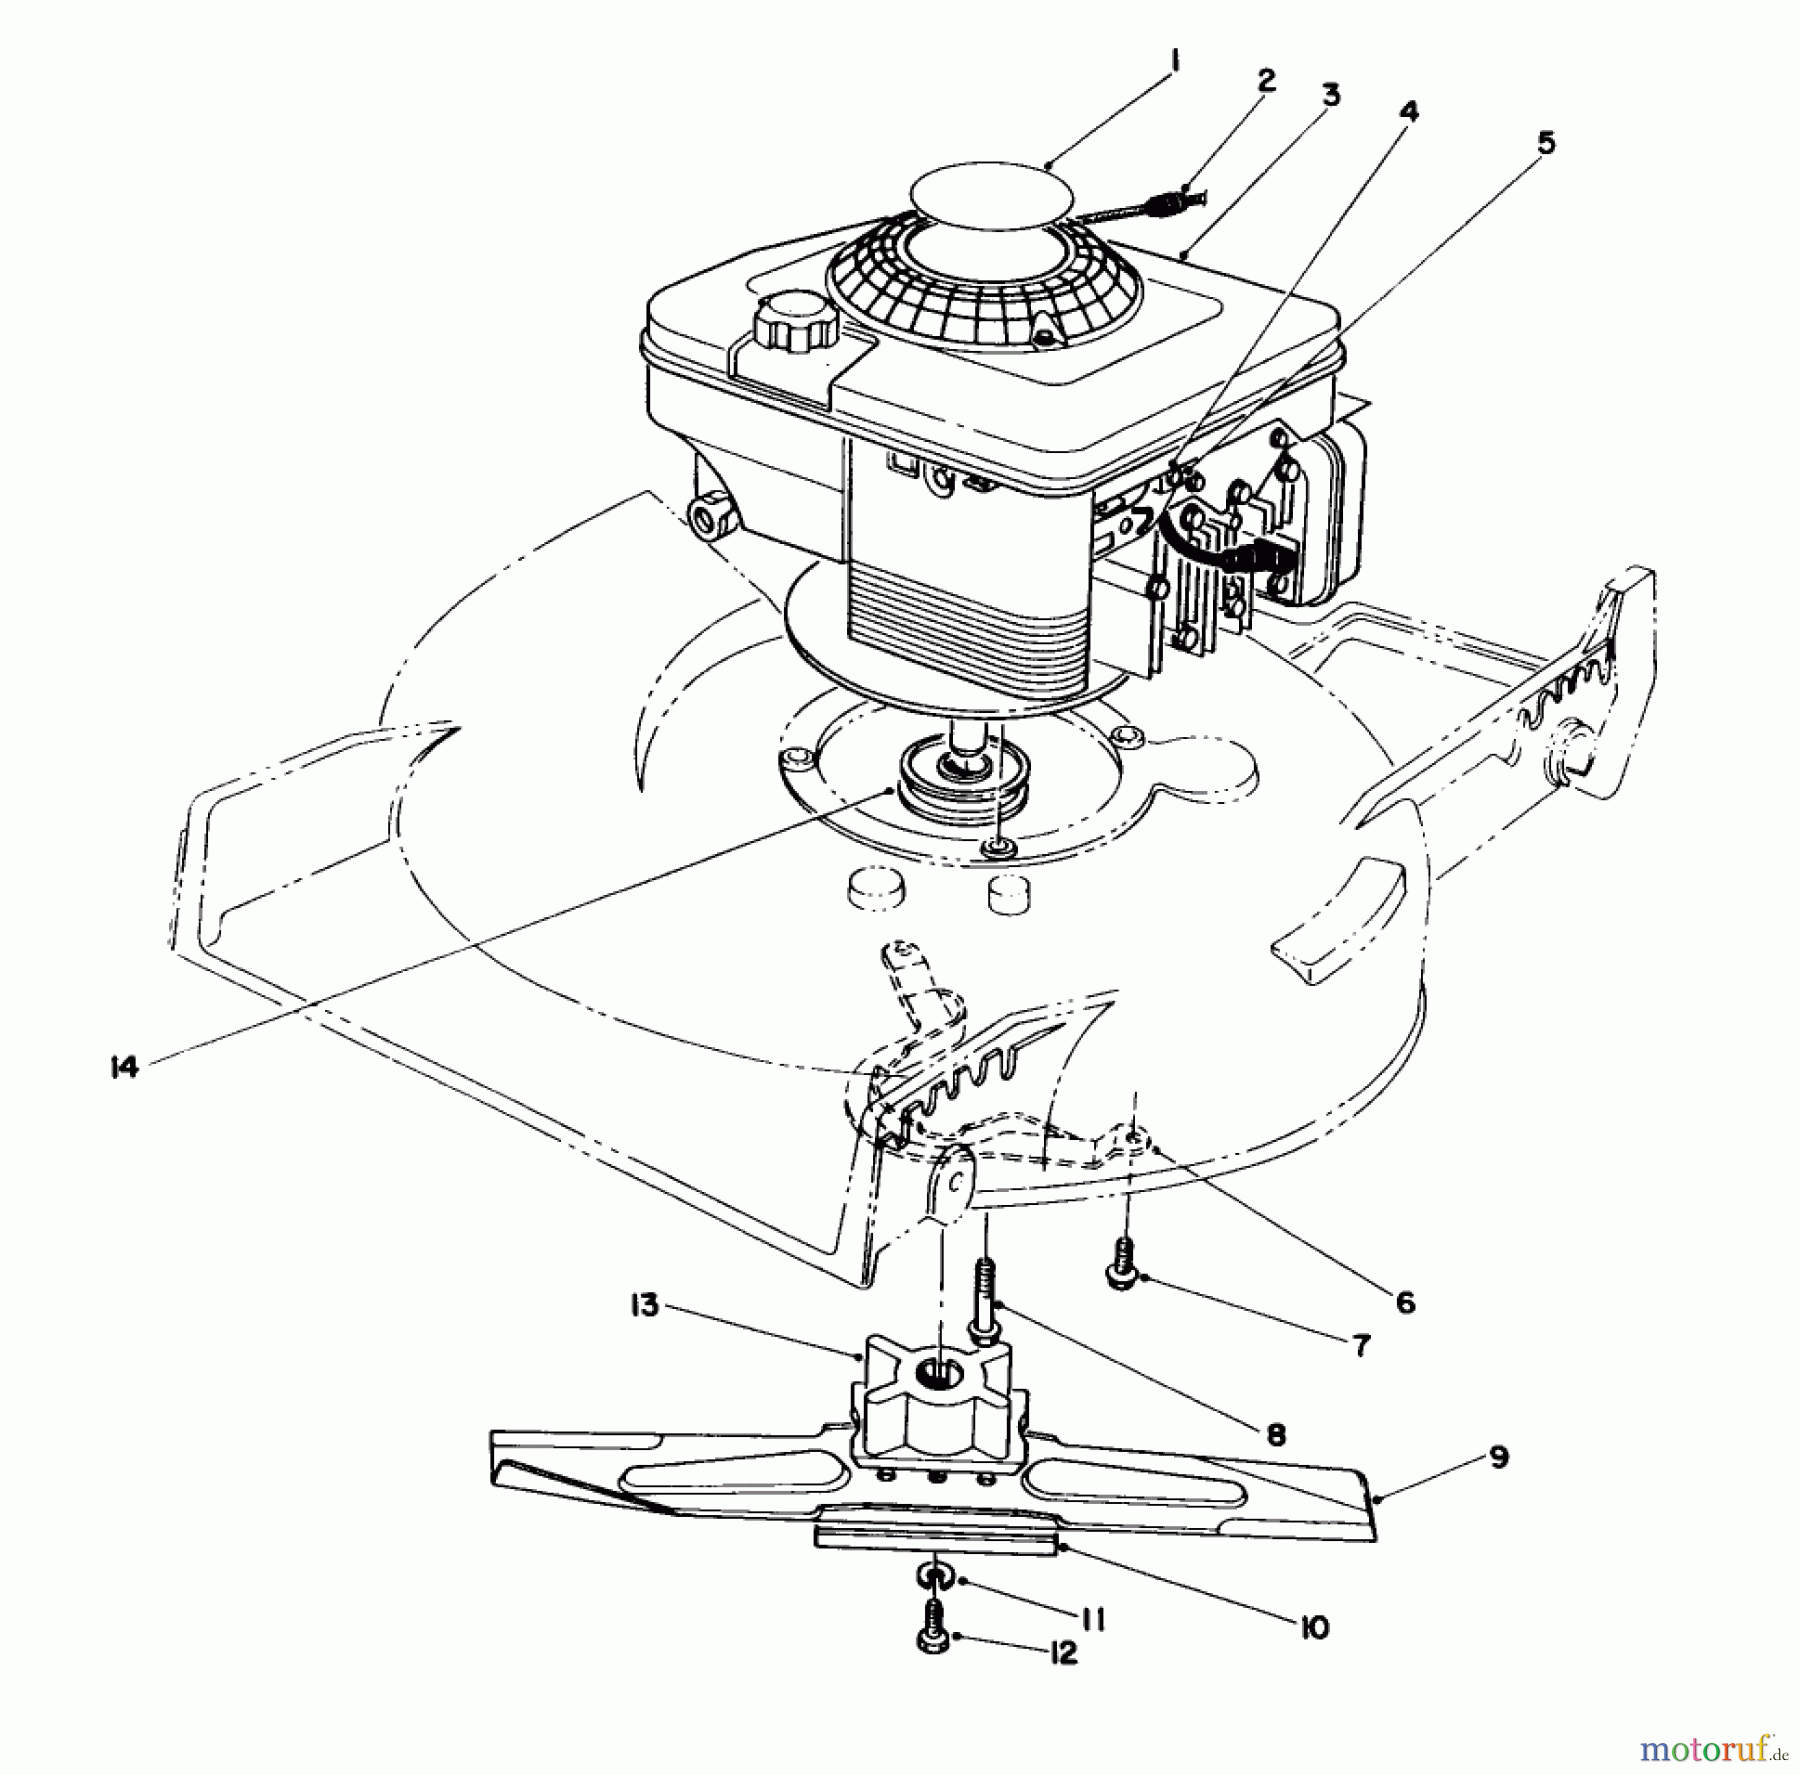  Toro Neu Mowers, Walk-Behind Seite 1 20218 - Toro Lawnmower, 1992 (2000001-2999999) ENGINE ASSEMBLY